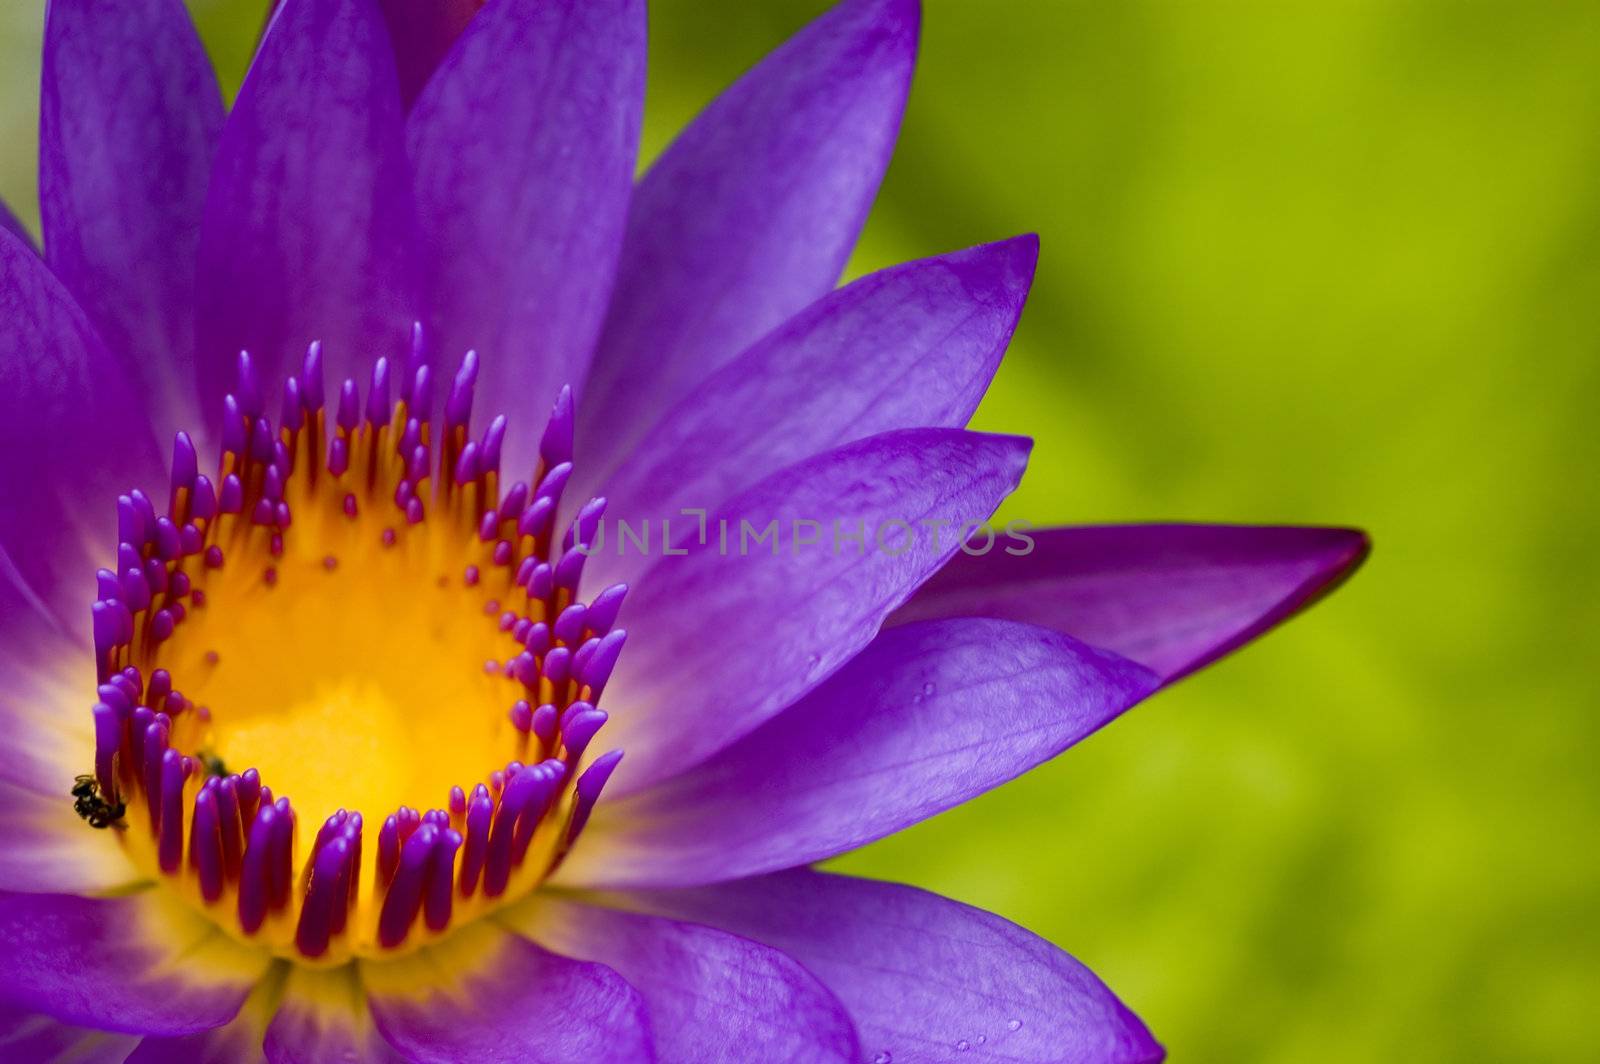 lotus by yuliang11